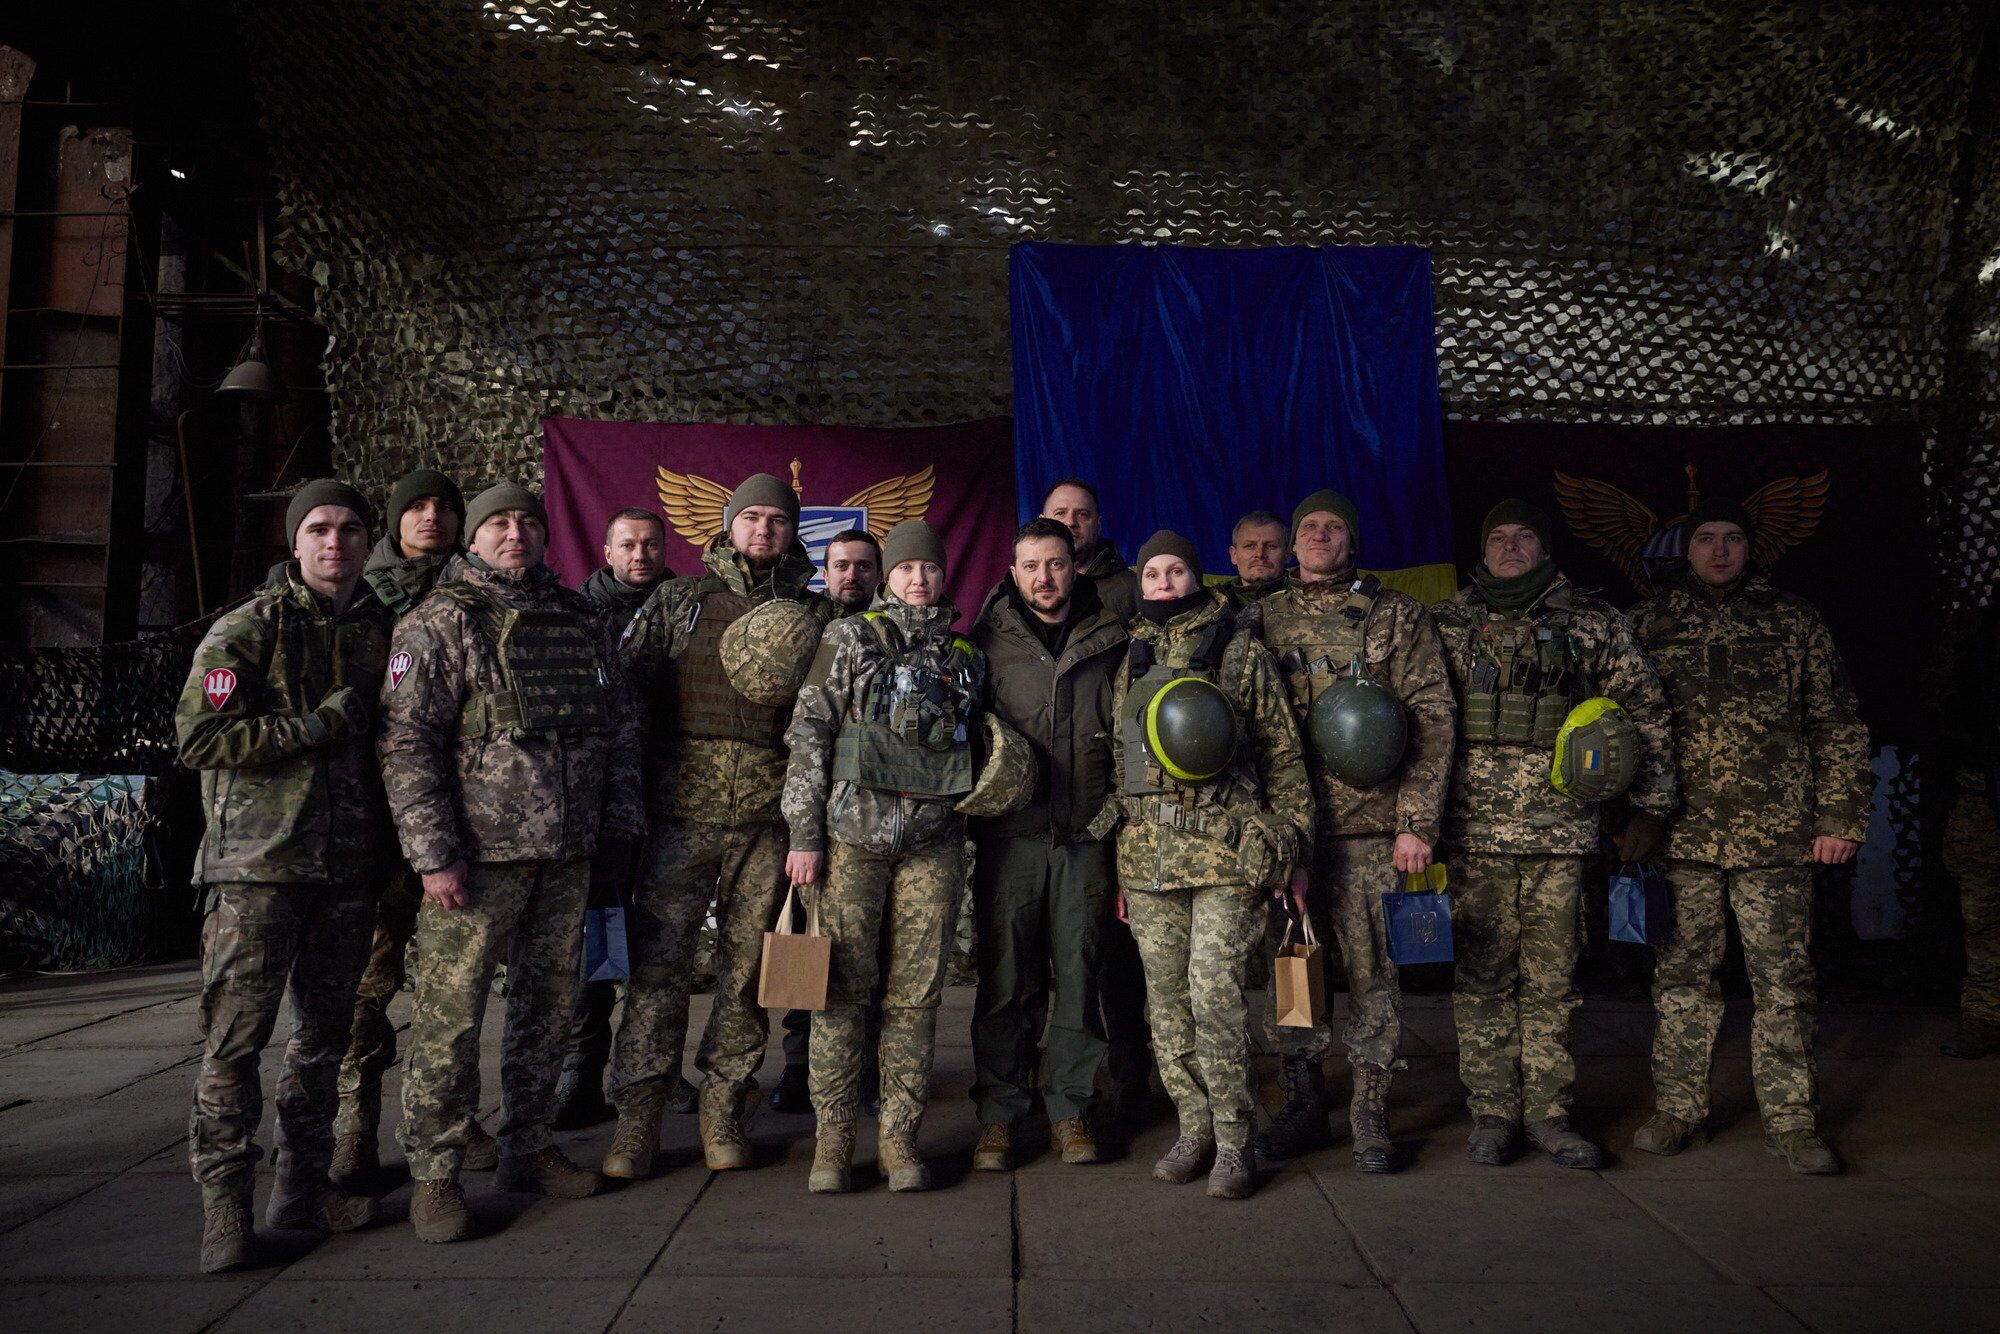 "Ви бороните нашу землю вдень і вночі": Зеленський прибув з візитом на Донбас і звернувся до воїнів ЗСУ в день їхнього свята. Відео